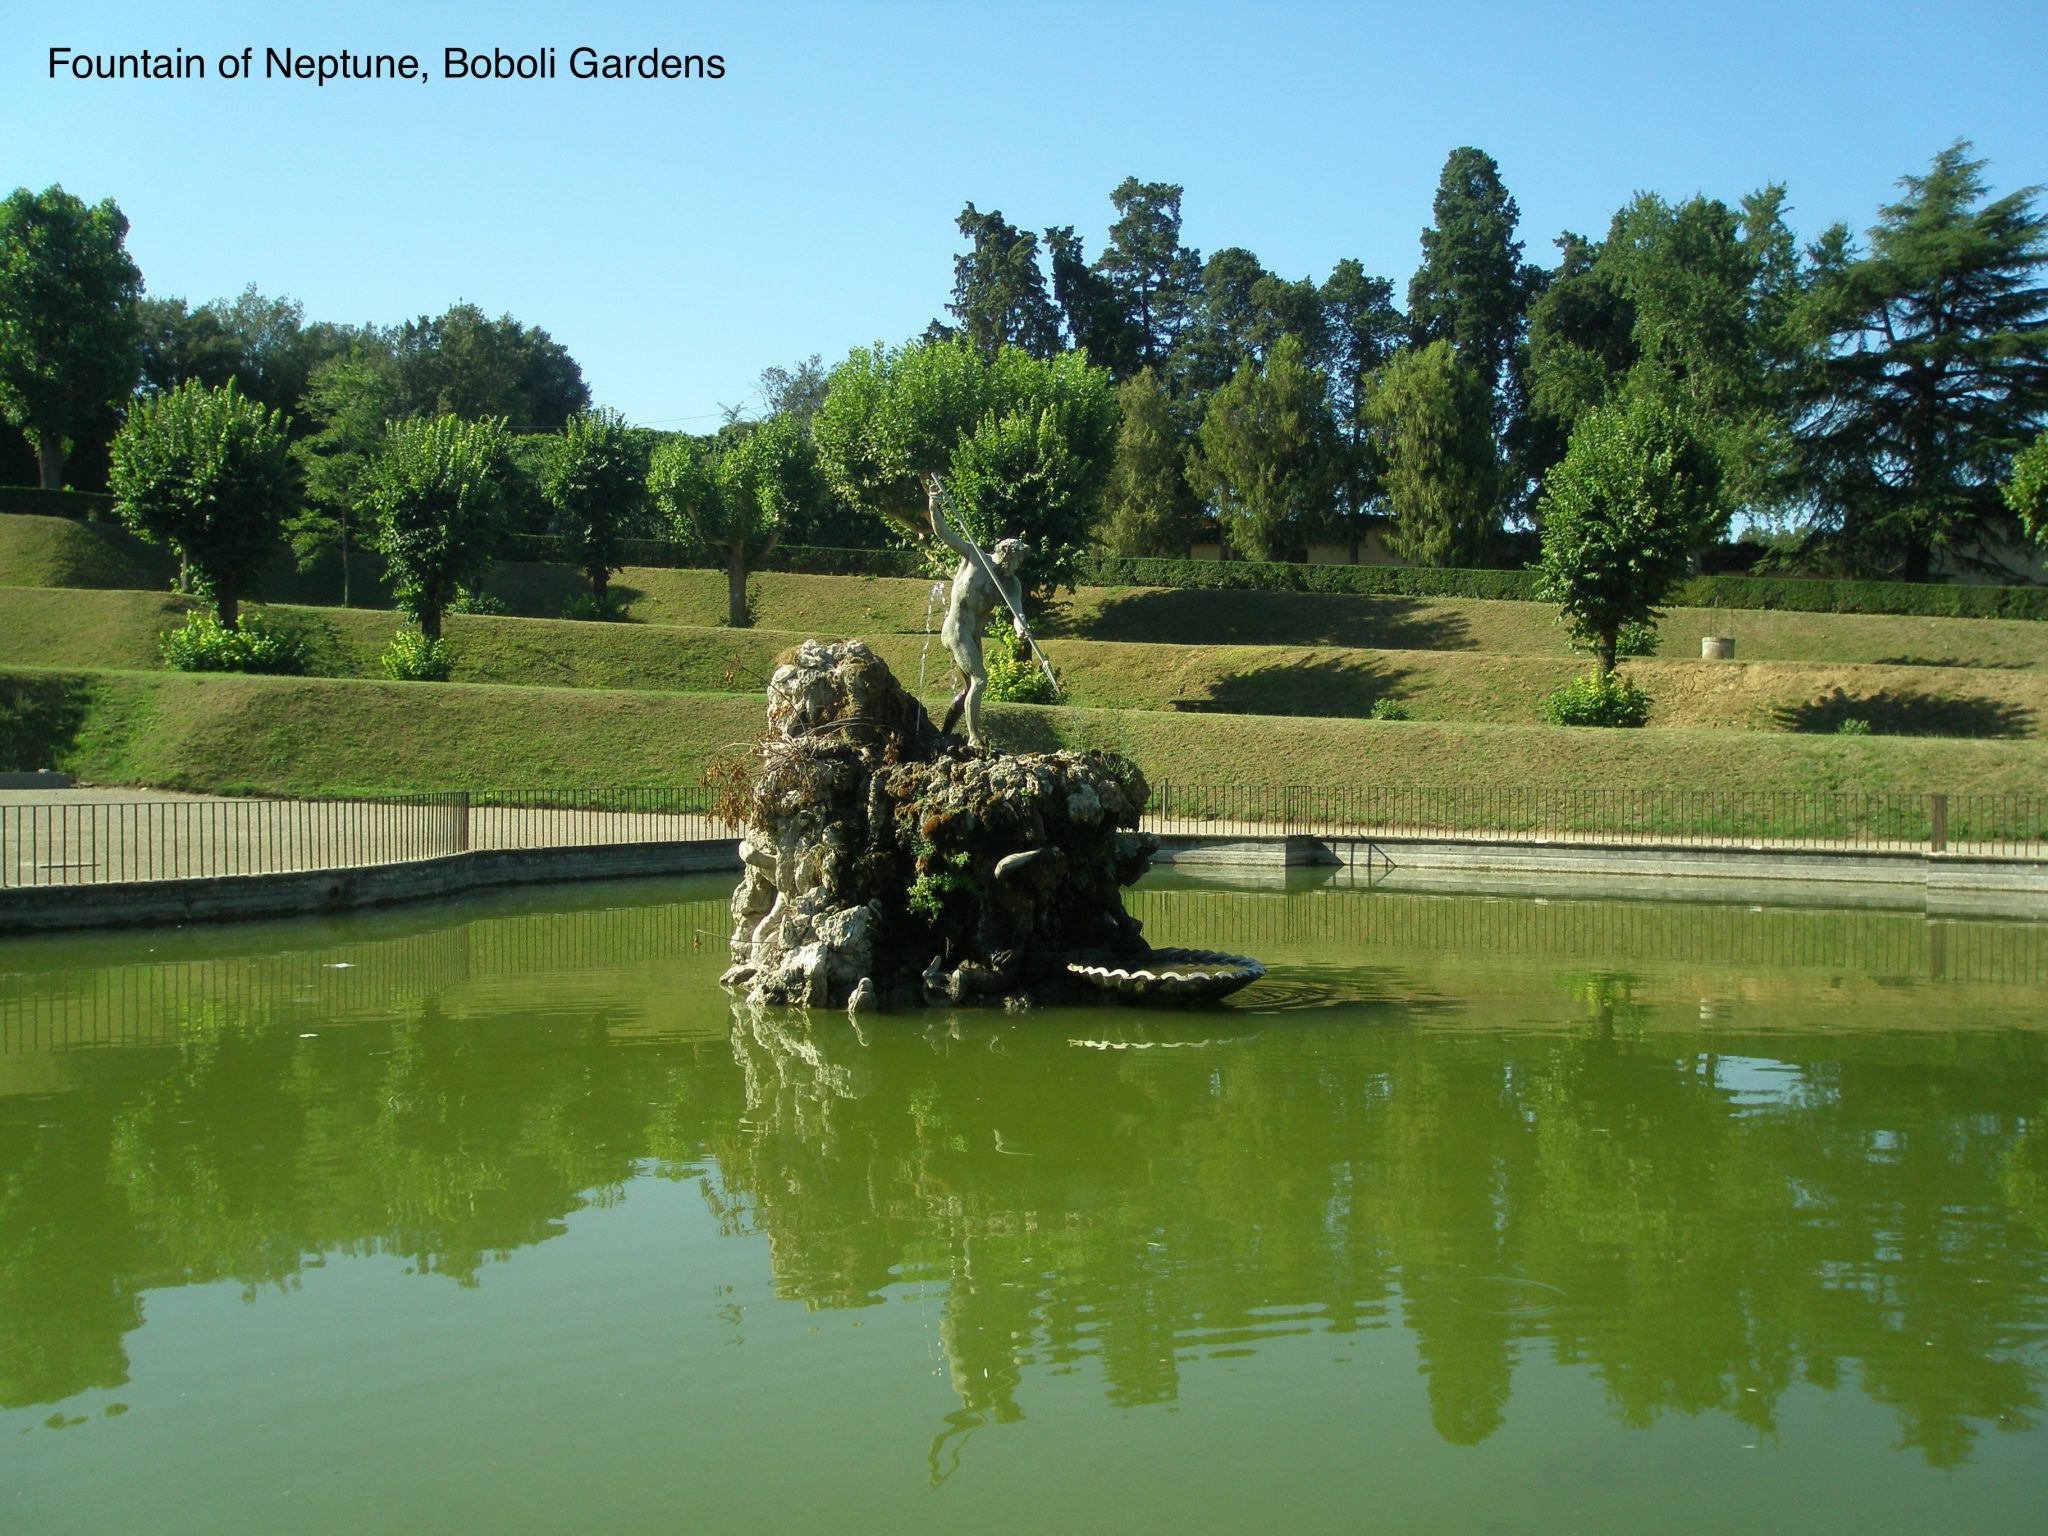 The Neptune Fountain, in the Boboli Gardens